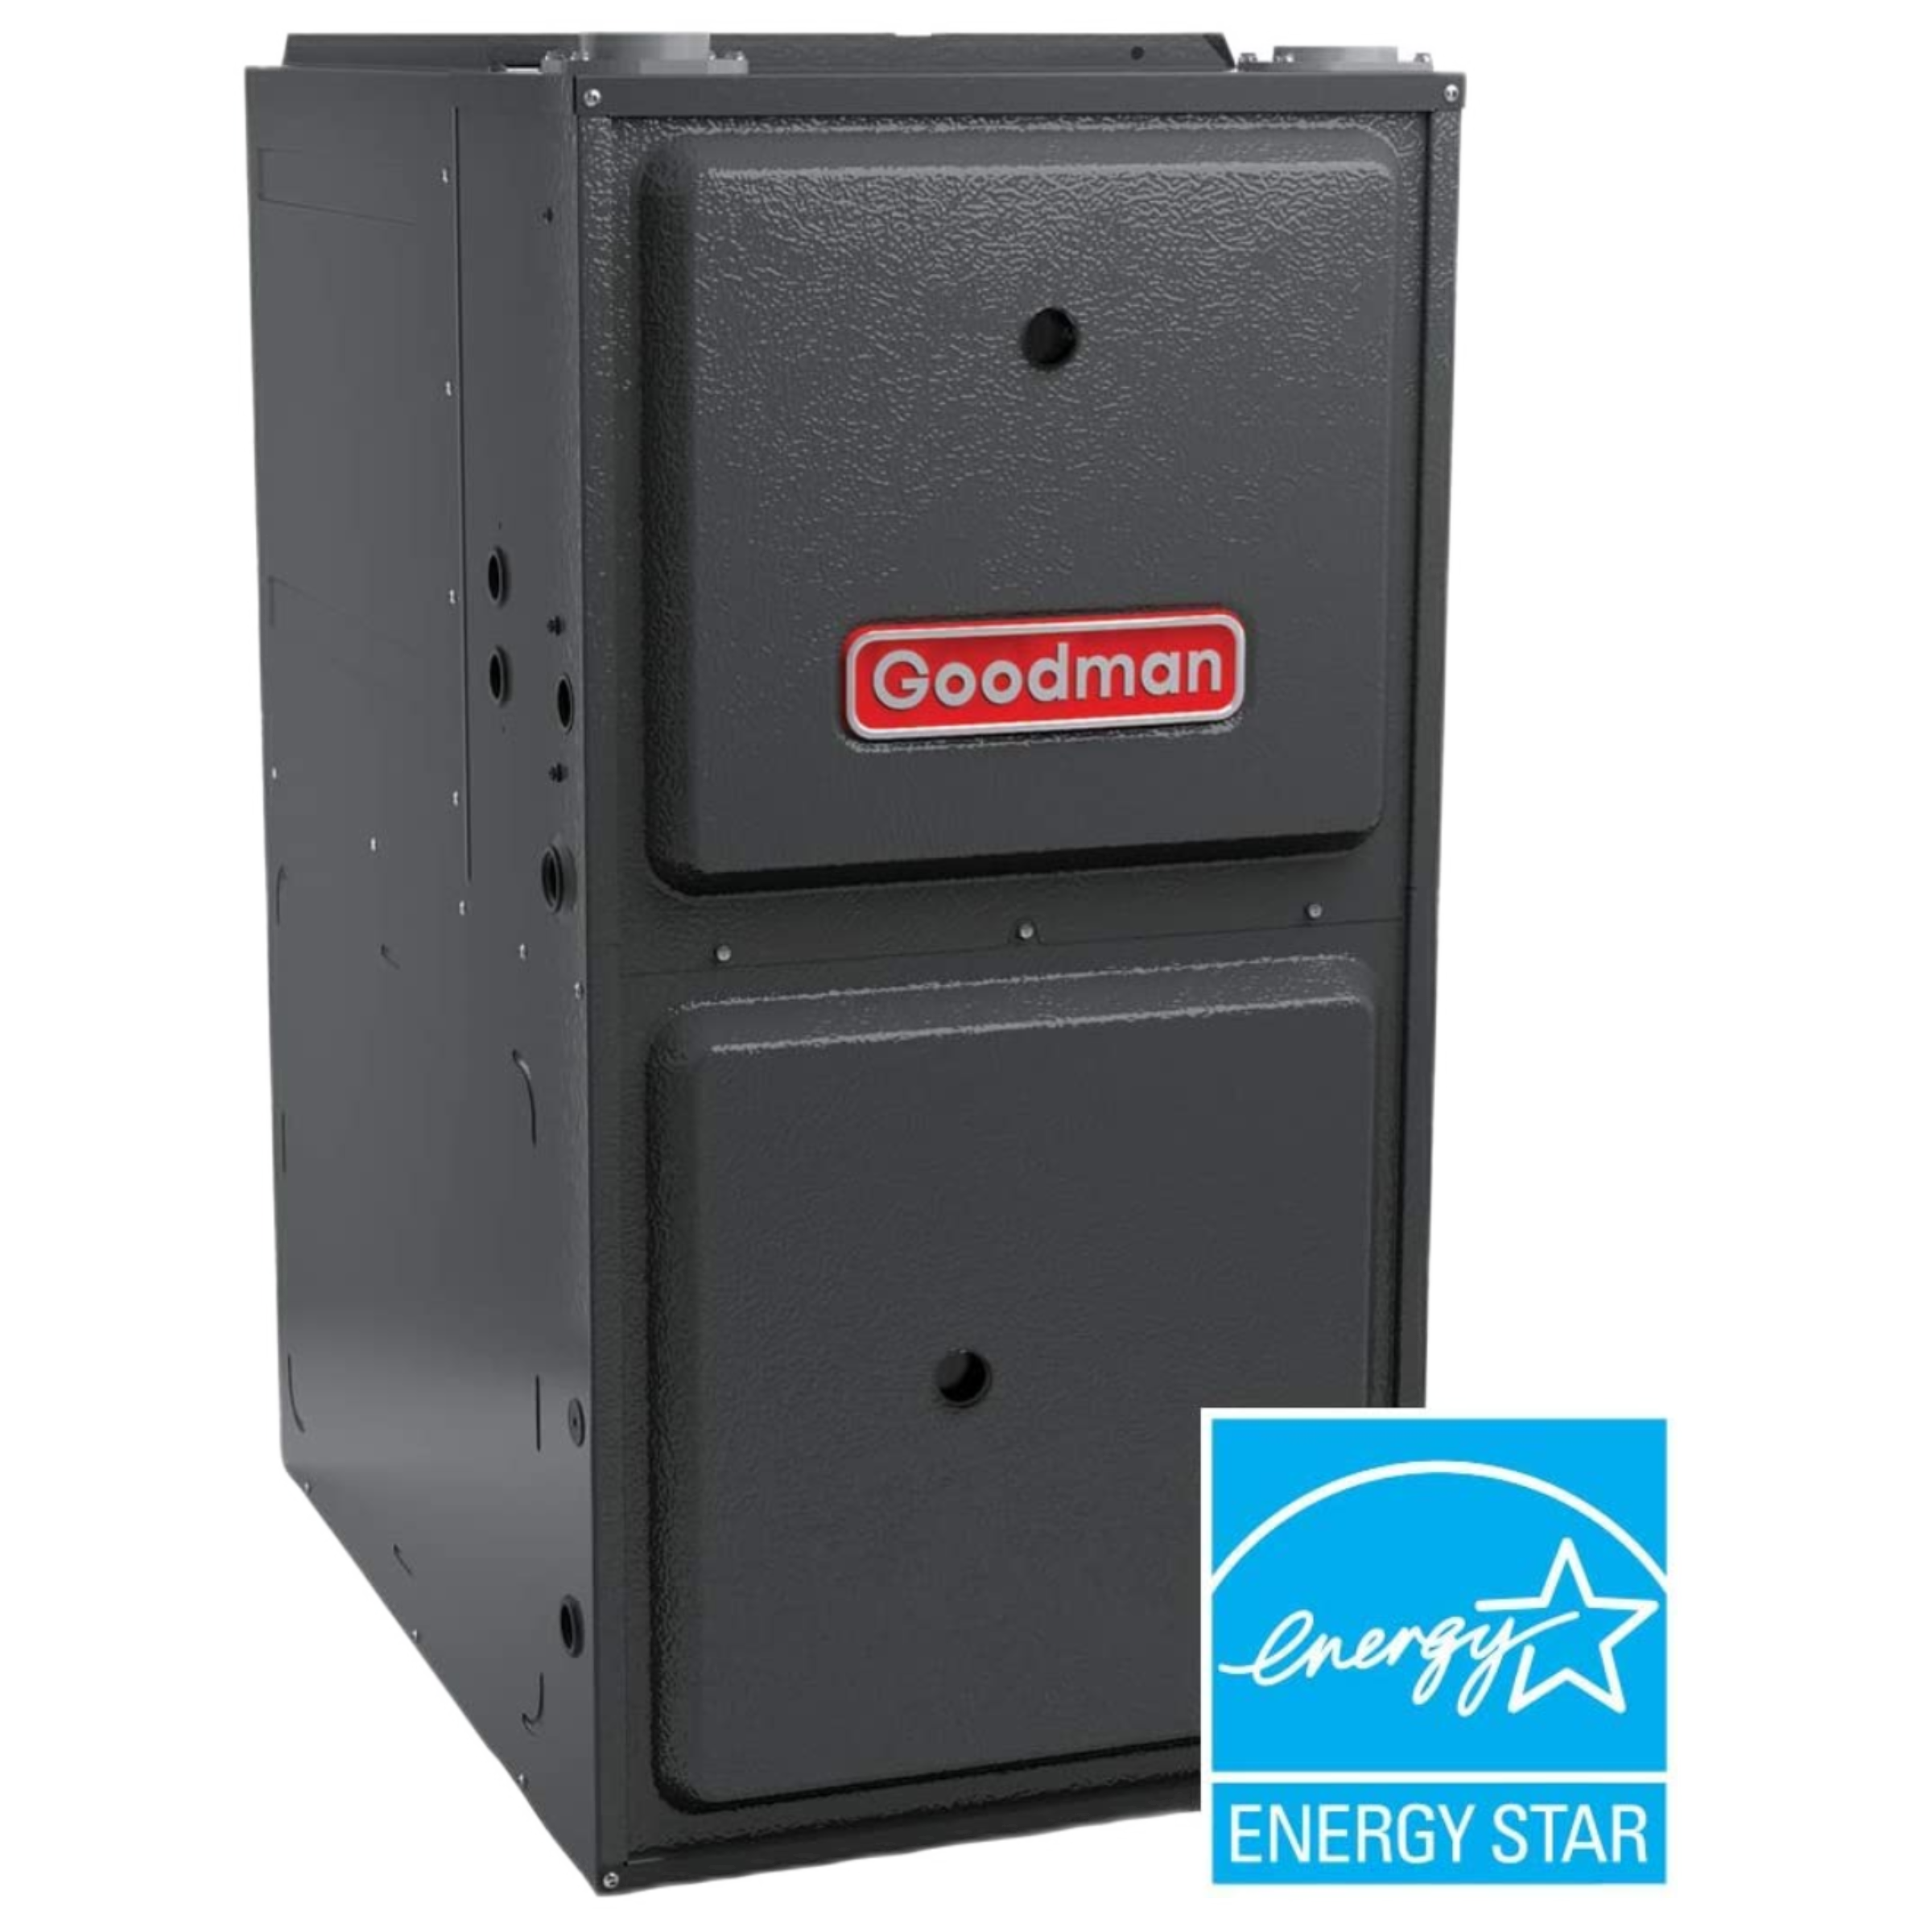 GMVM97 Goodman Gas Furnace Series Upflow/Horizontal, 97% AFUE, Variable-Speed ECM/ComfortBridge, Modulating Gas Valve